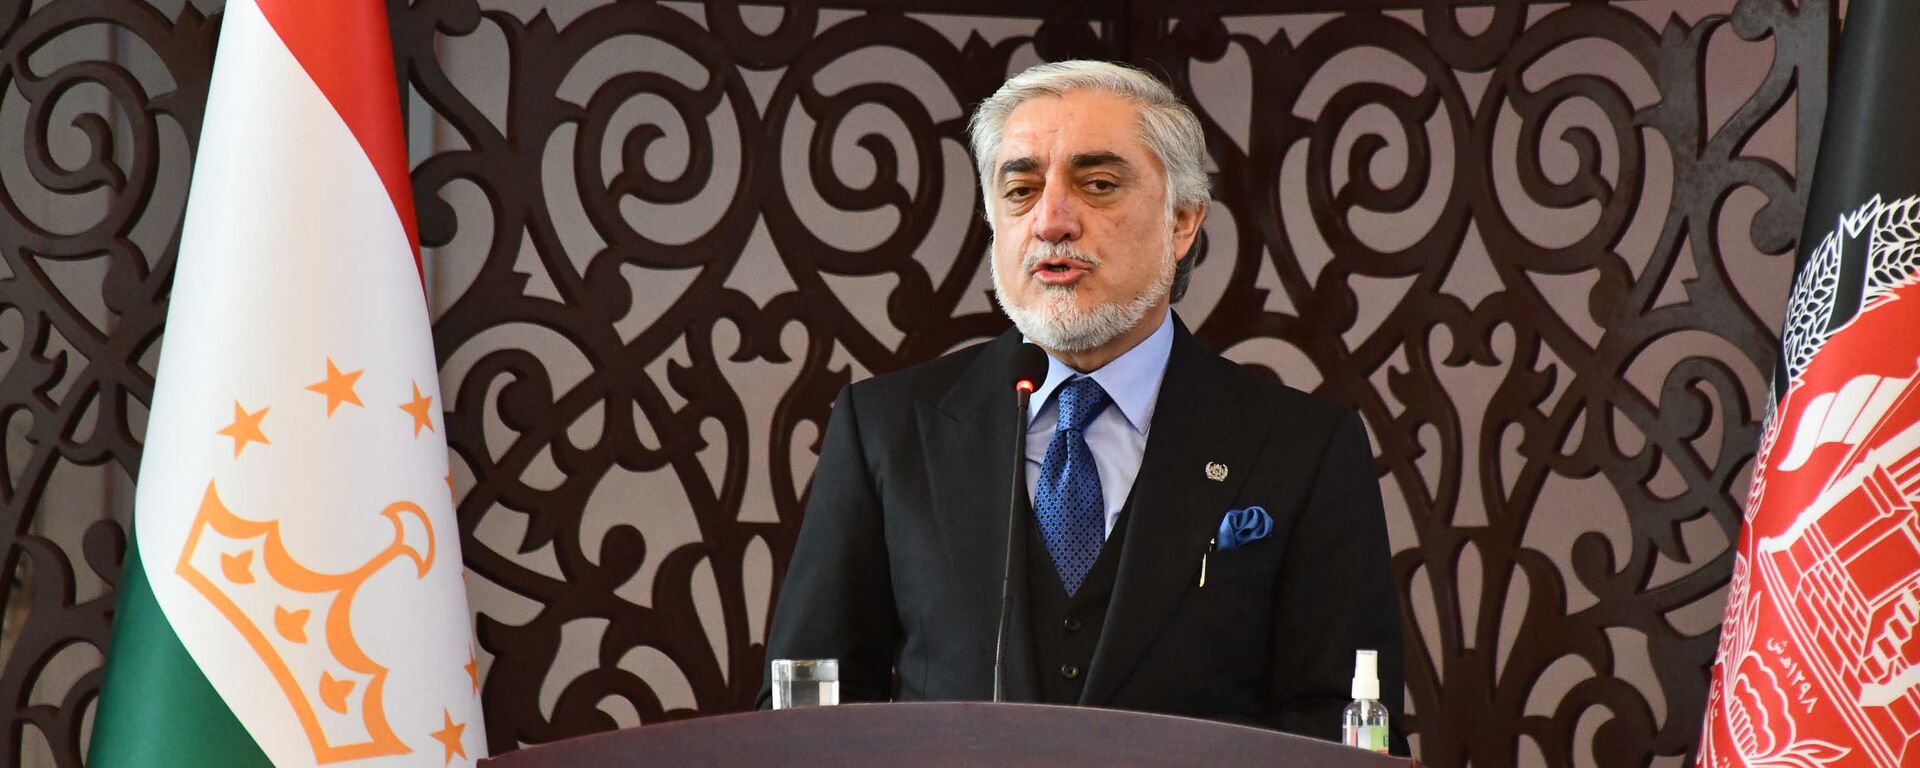 Председатель Высшего совета национального примирения Афганистана Абдулла Абдулла - Sputnik Таджикистан, 1920, 01.07.2021